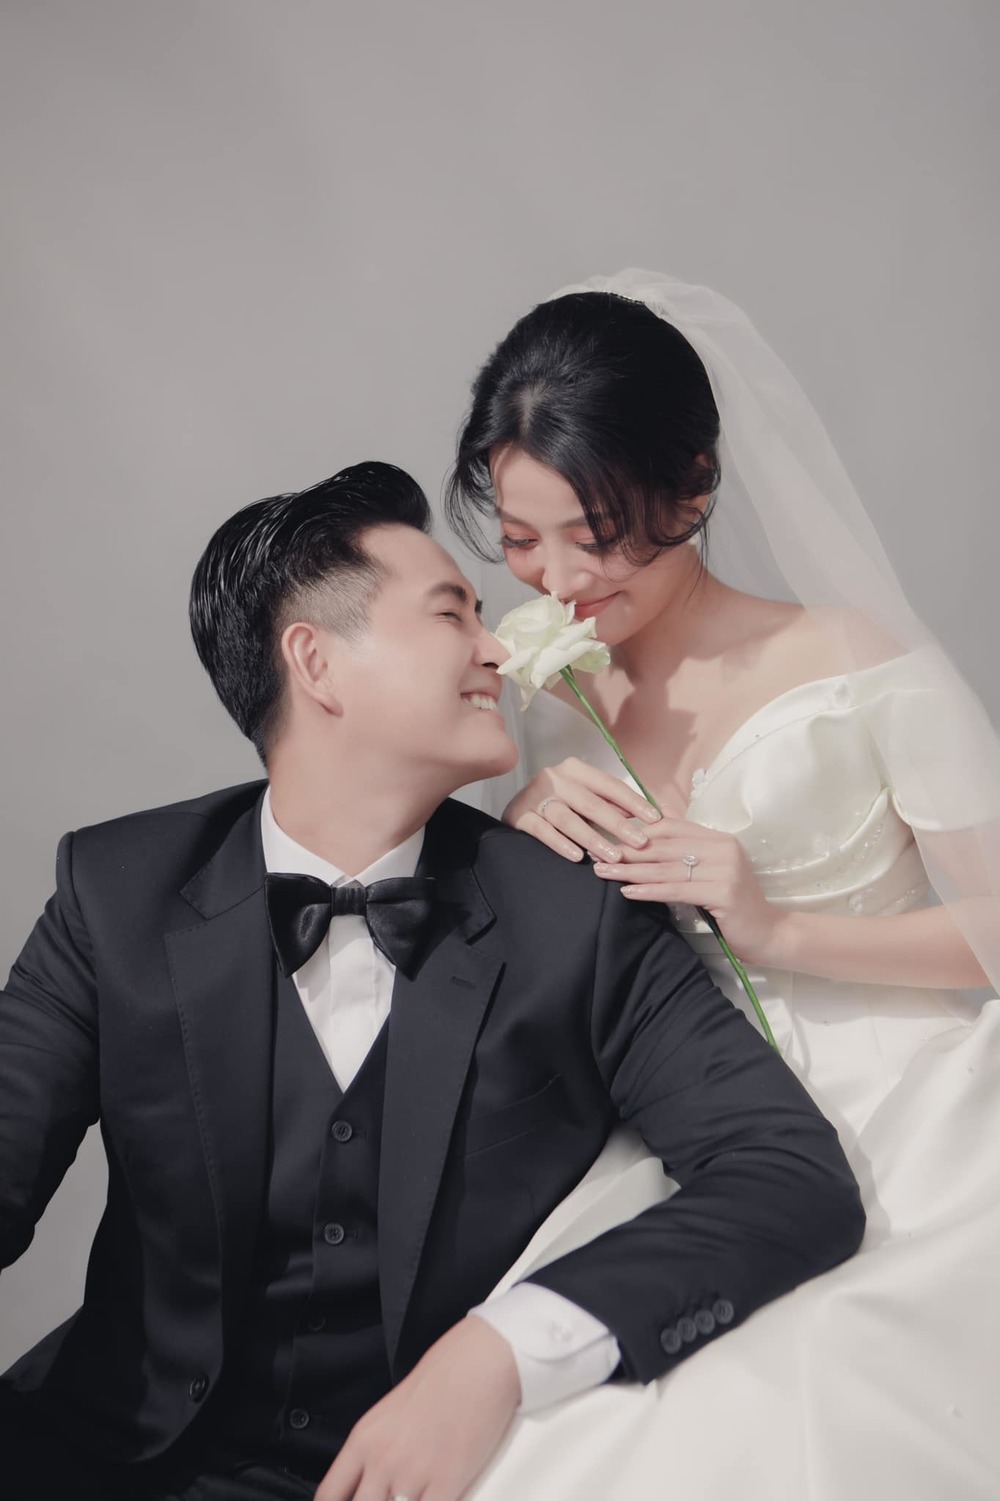  
Karen Nguyễn và chồng sắp cưới có nhiều khoảnh khắc tình tứ, lãng mạn. (Ảnh: FB Nguyễn Kiều Diễm) - Tin sao Viet - Tin tuc sao Viet - Scandal sao Viet - Tin tuc cua Sao - Tin cua Sao